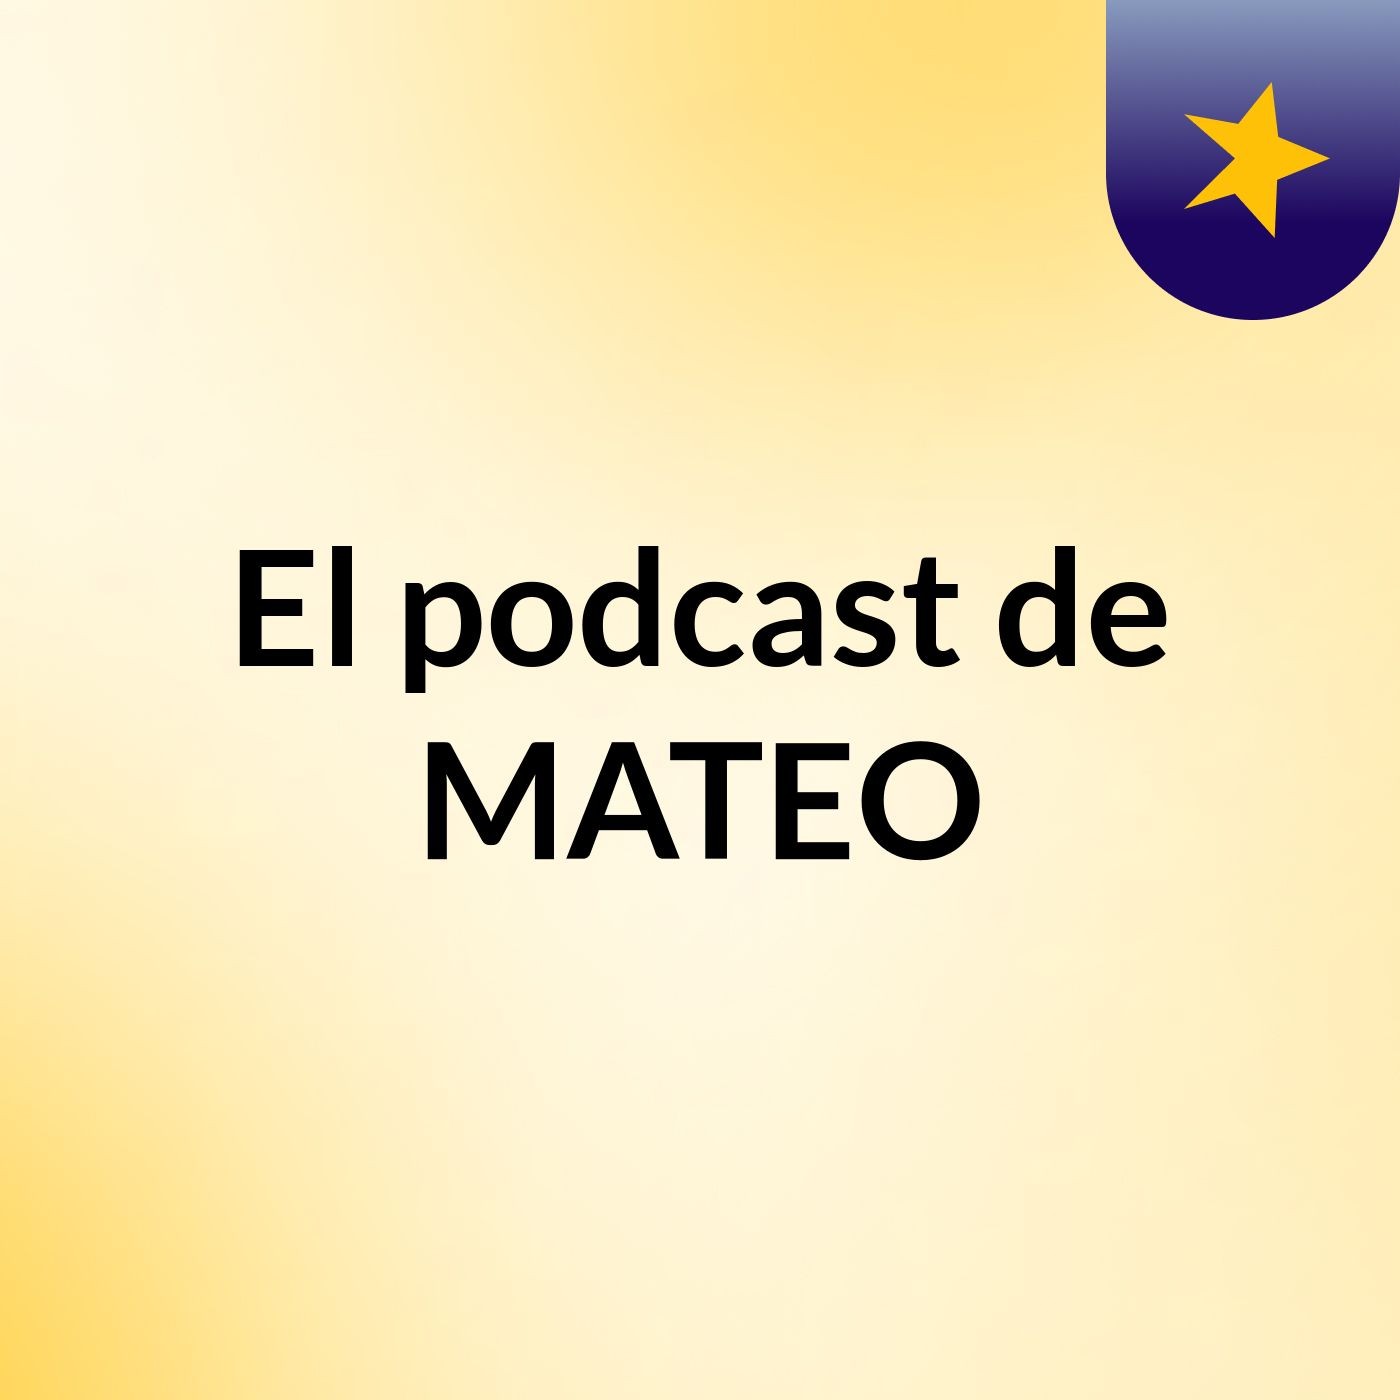 El podcast de MATEO